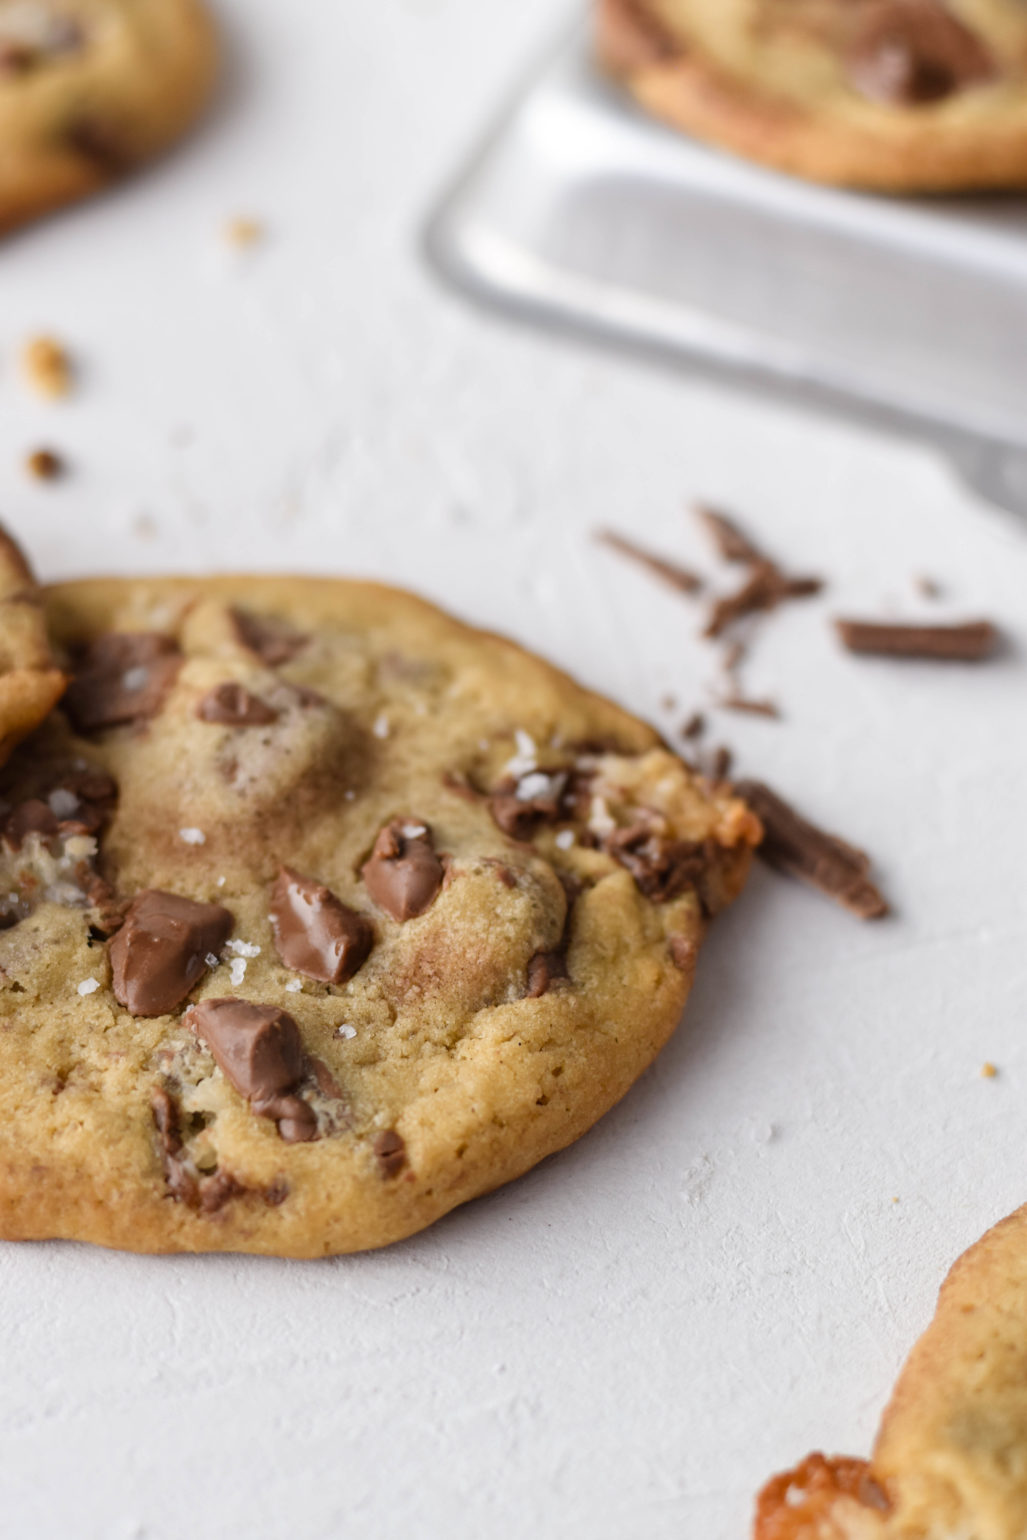 Bounty Cookies  Rezept für saftige weiche Bounty Cookies nach amerikanischem Vorbild. Schnell und einfach gemacht. Mit extra großen Schokostückchen und Bounty.   #Cookies #Kekse #Bounty #Kokos